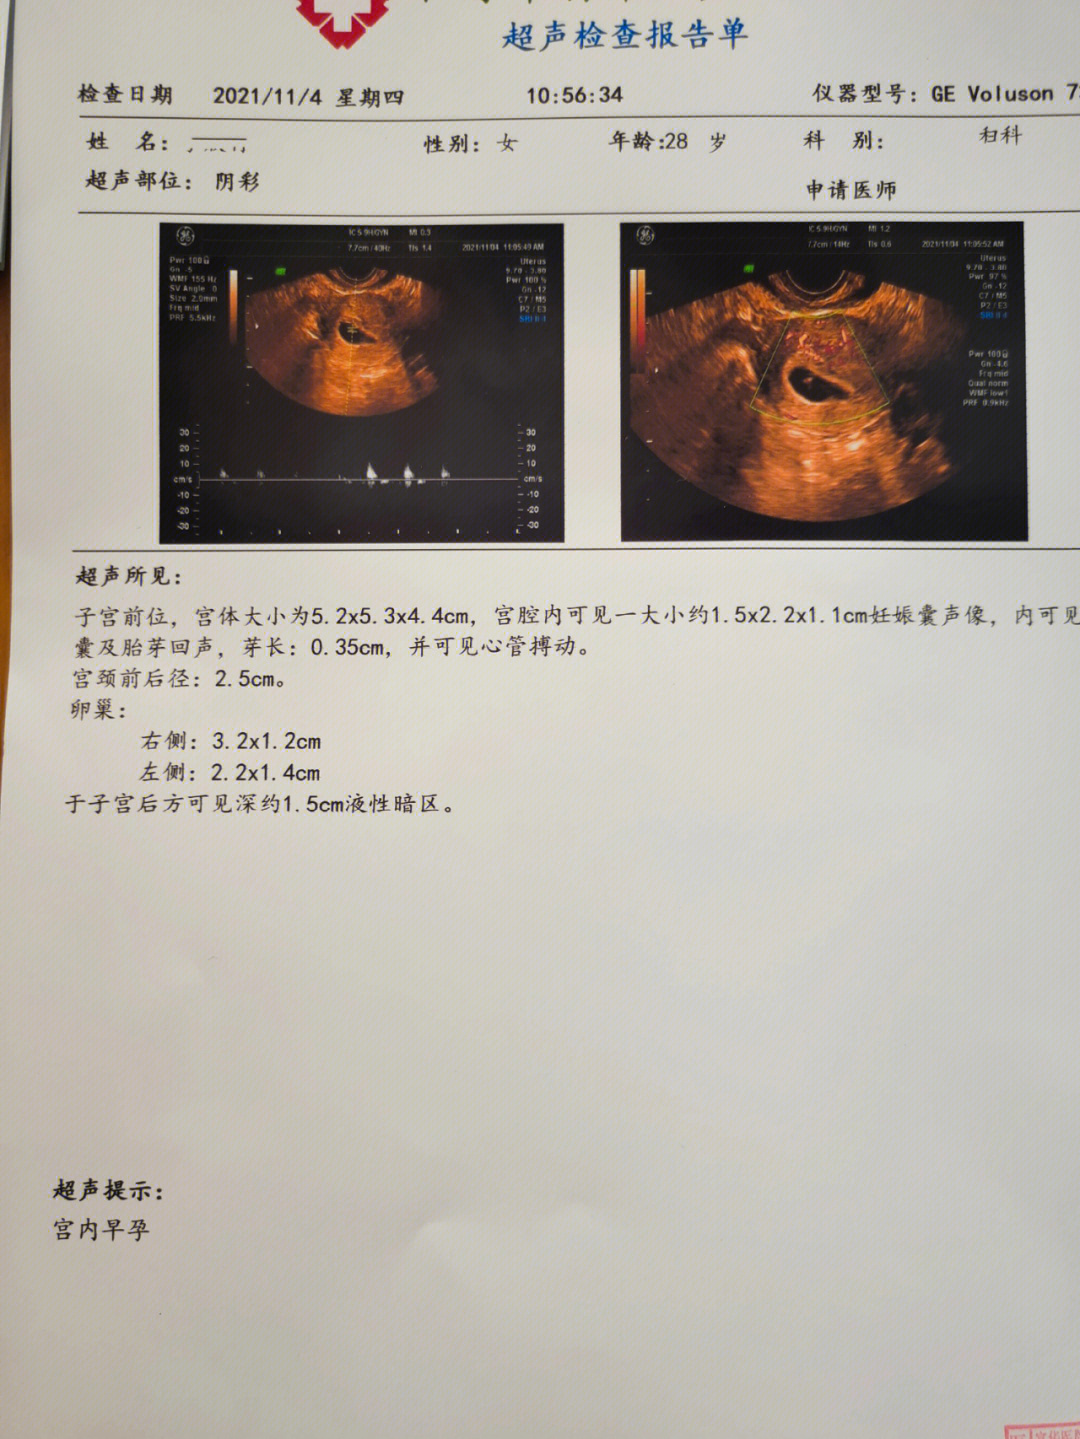 十七周胎心位置示意图图片